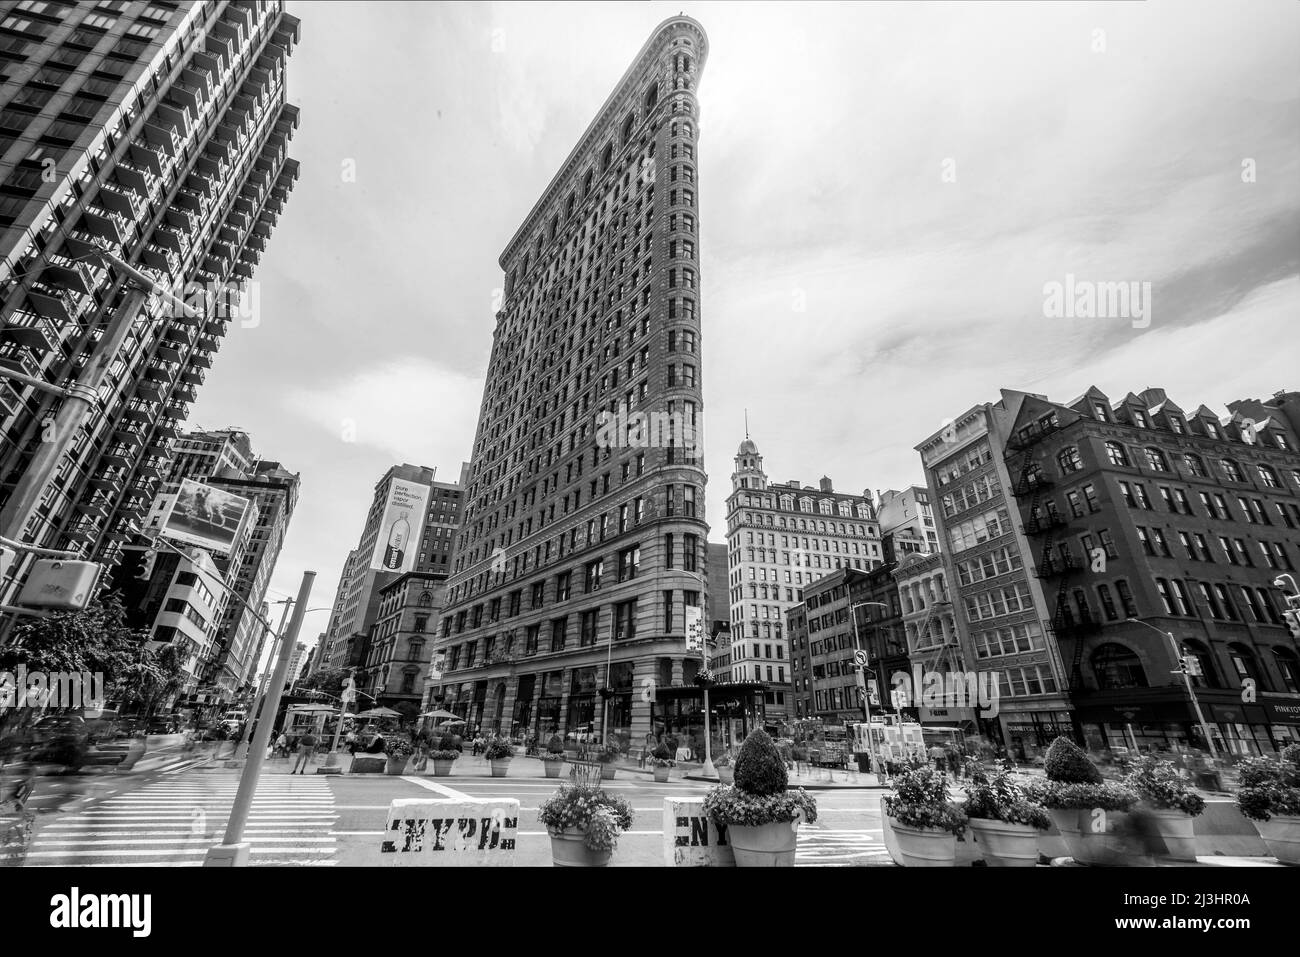 QUARTIER FLATIRON, New York City, NY, USA, bâtiment historique Flatiron ou Fuller, un site d'intérêt triangulaire de 22 étages avec cadre en acier situé dans la Cinquième Avenue de Manhattan, a été achevé en 1902. Banque D'Images